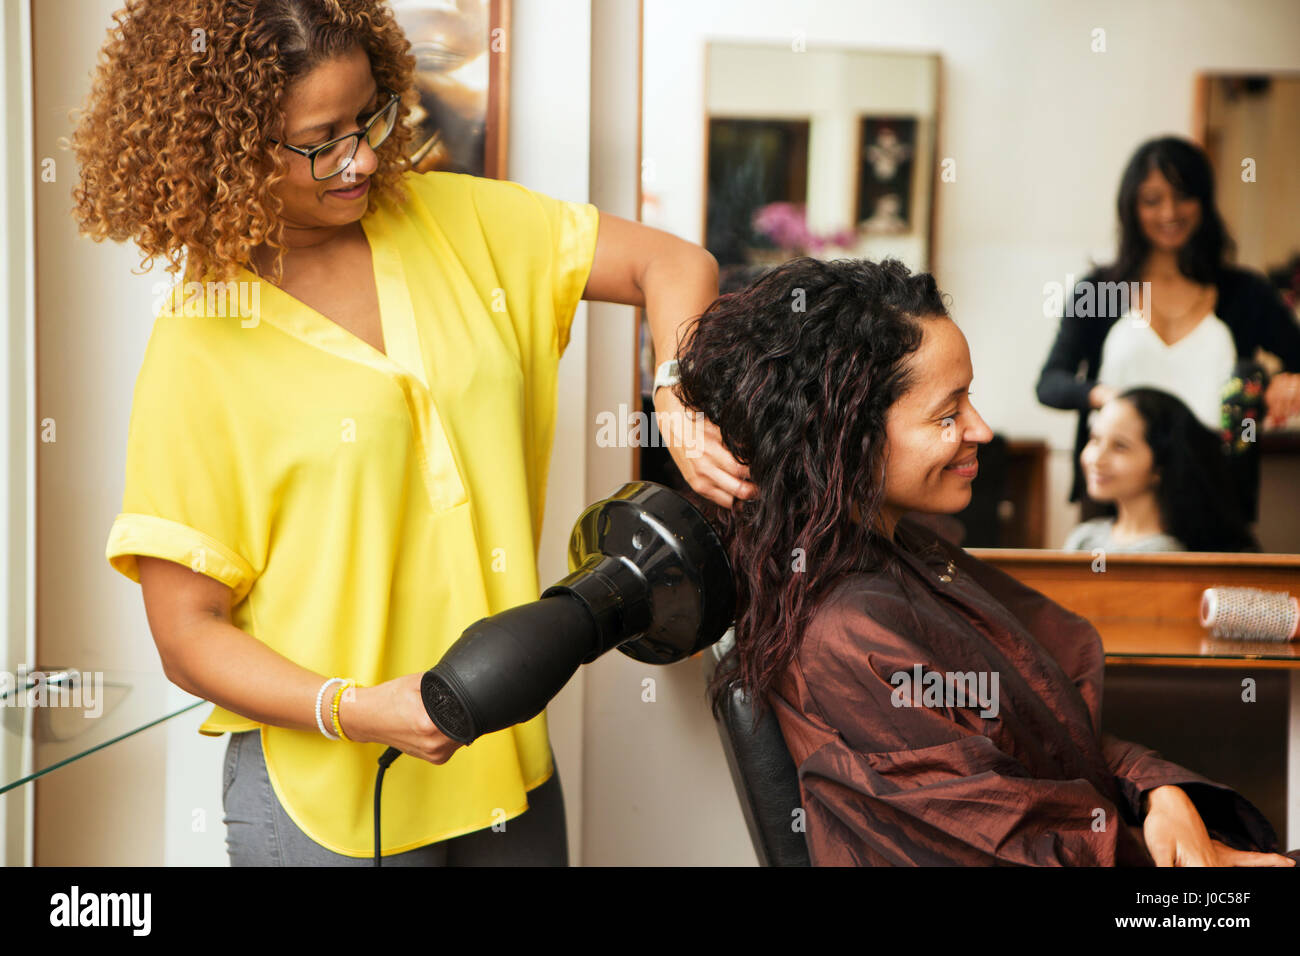 Friseur föhnen Haare weiblichen Kunden im Friseursalon Stockfoto